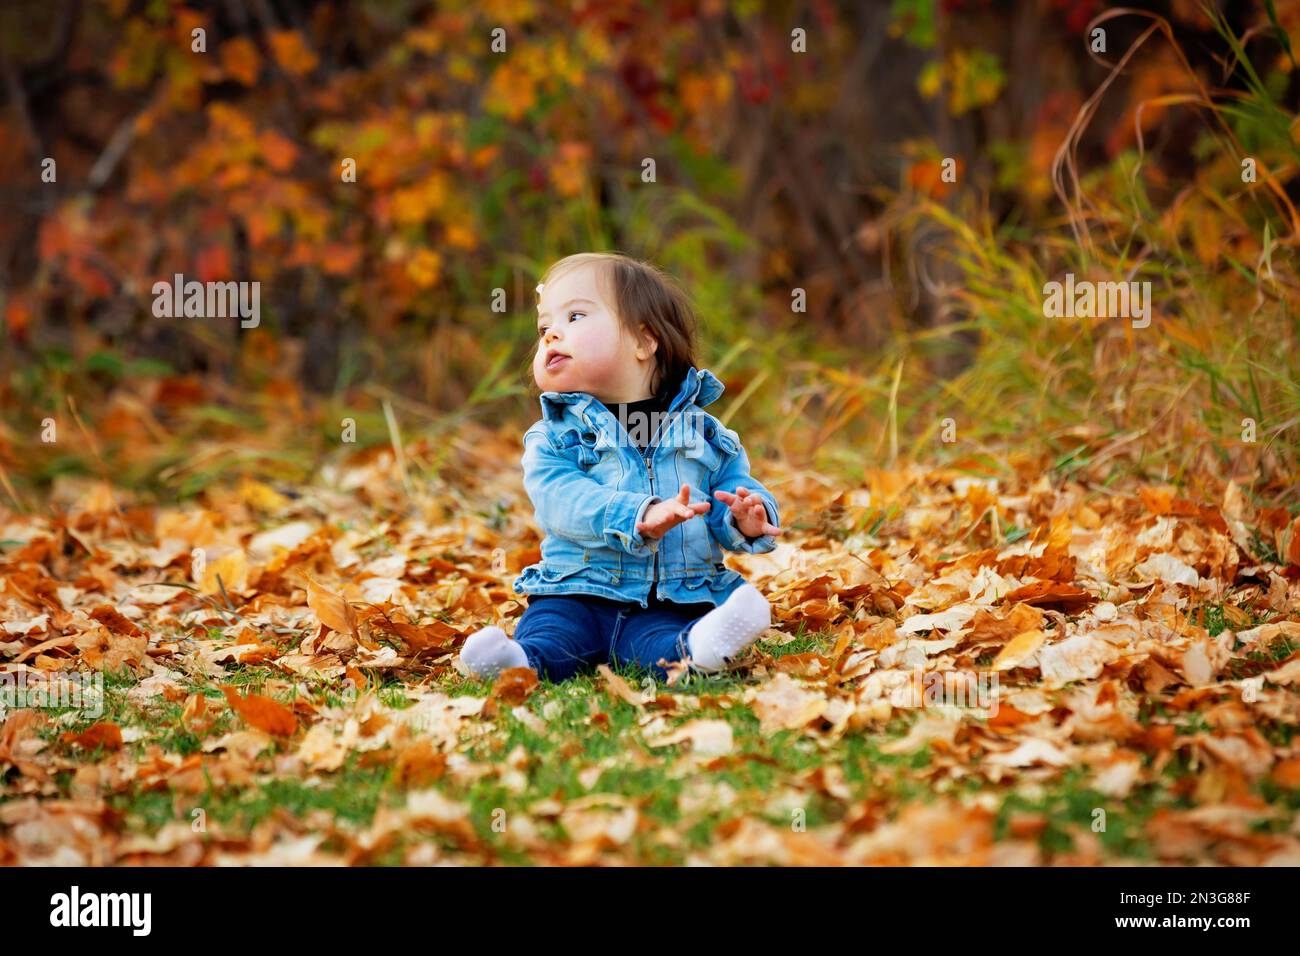 Porträt eines kleinen Mädchens mit Down-Syndrom, das in der Herbstsaison zwischen den gefallenen Blättern in einem Stadtpark auf dem Boden sitzt Stockfoto